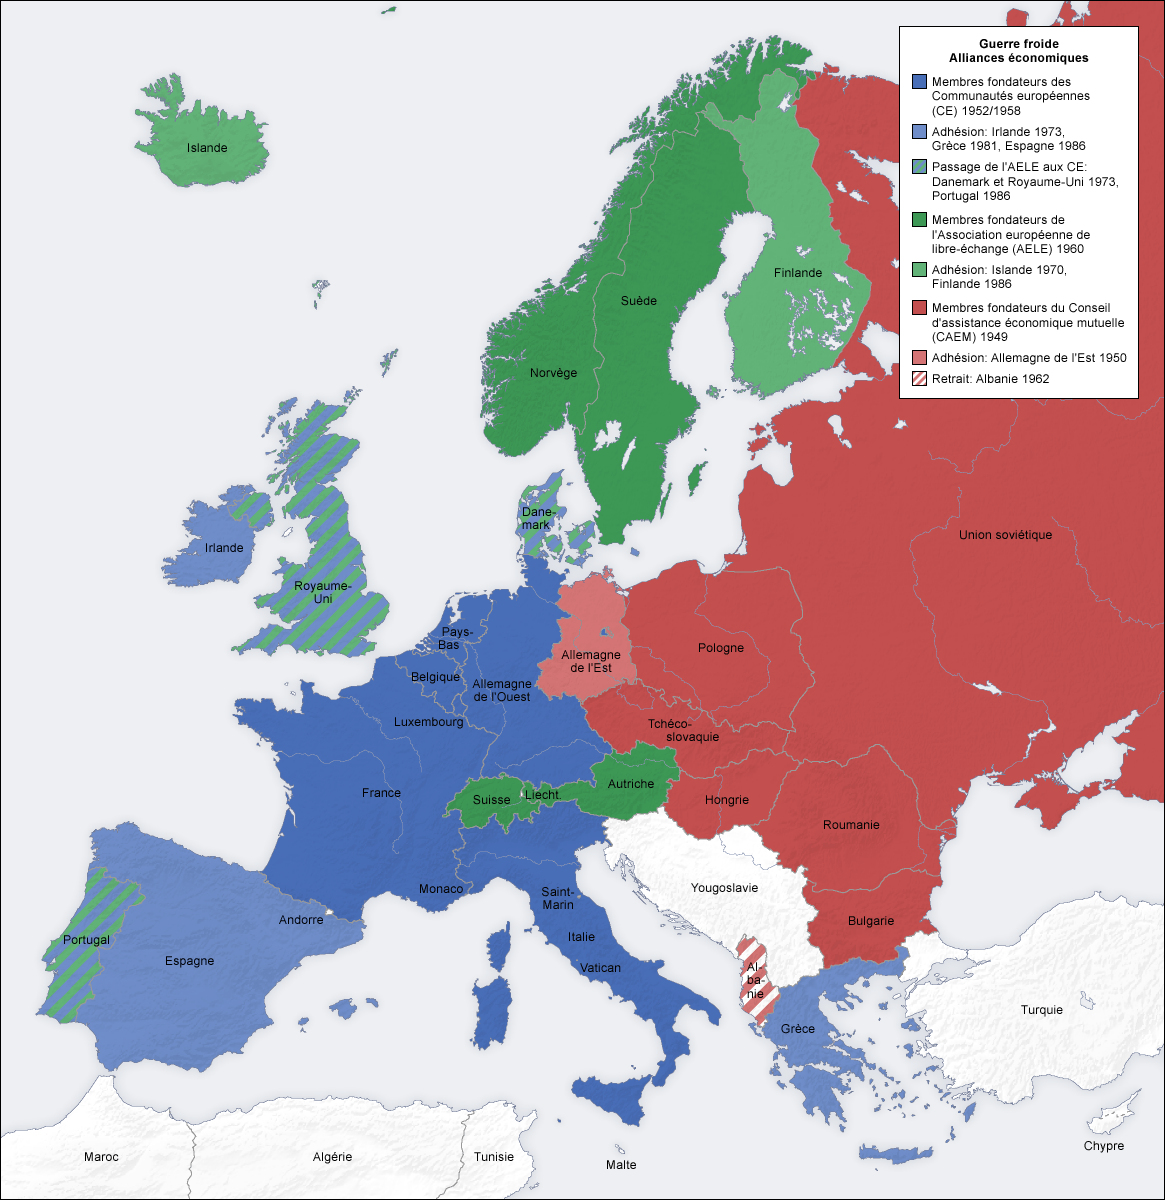 Europe Guerre Froide Alliances économiques Map